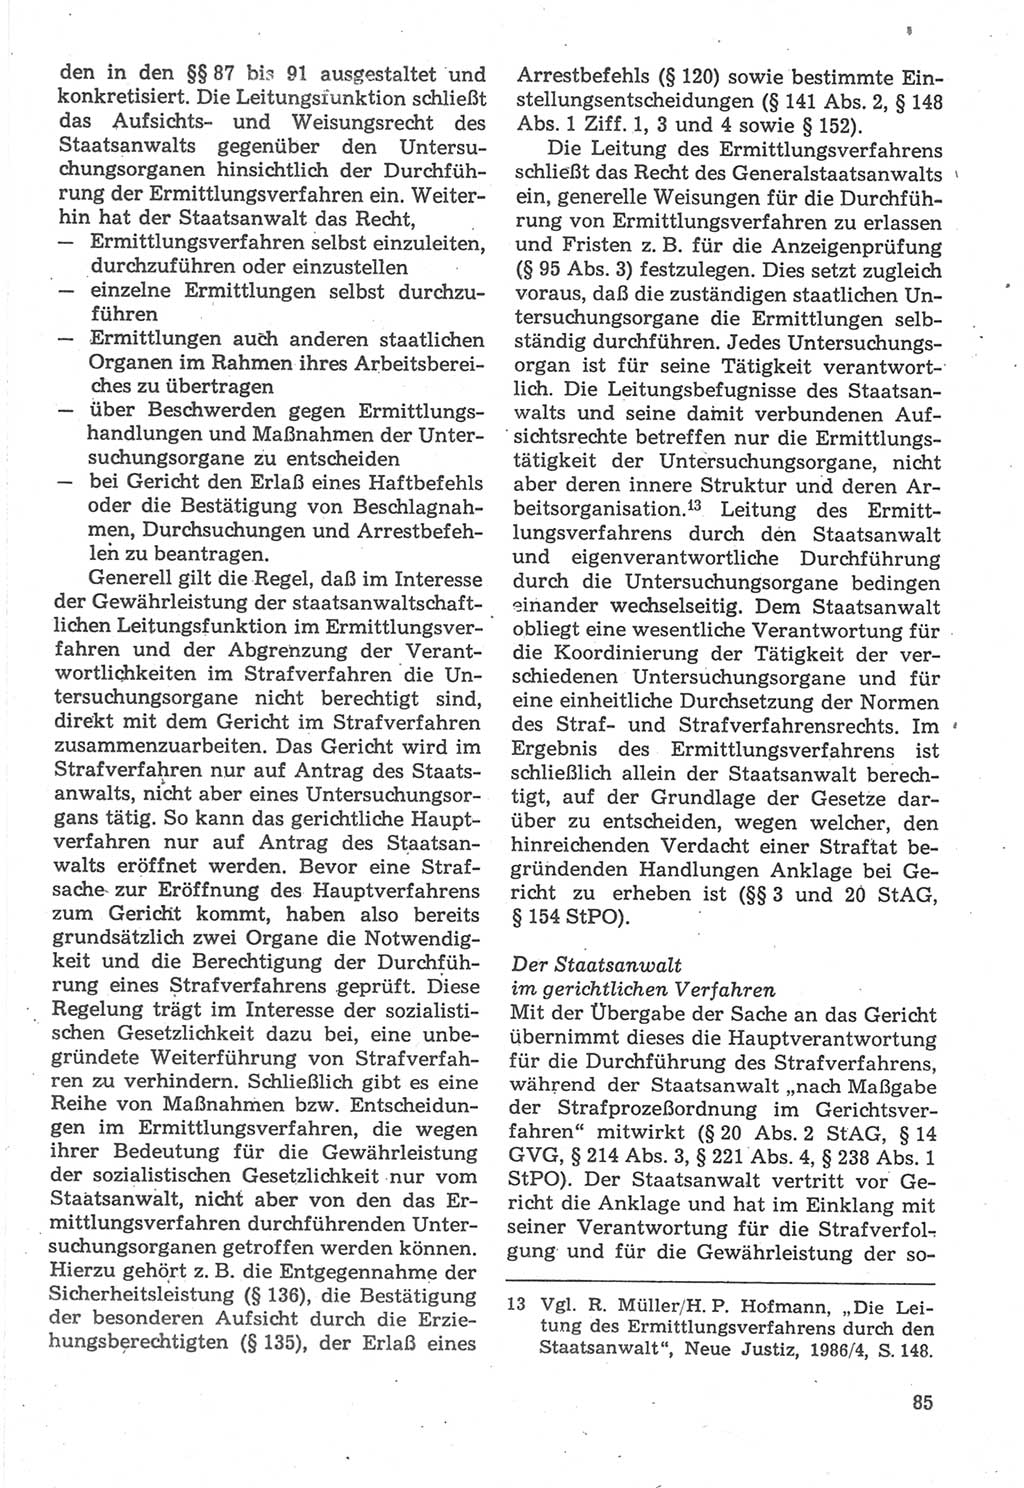 Strafverfahrensrecht [Deutsche Demokratische Republik (DDR)], Lehrbuch 1987, Seite 85 (Strafverf.-R. DDR Lb. 1987, S. 85)